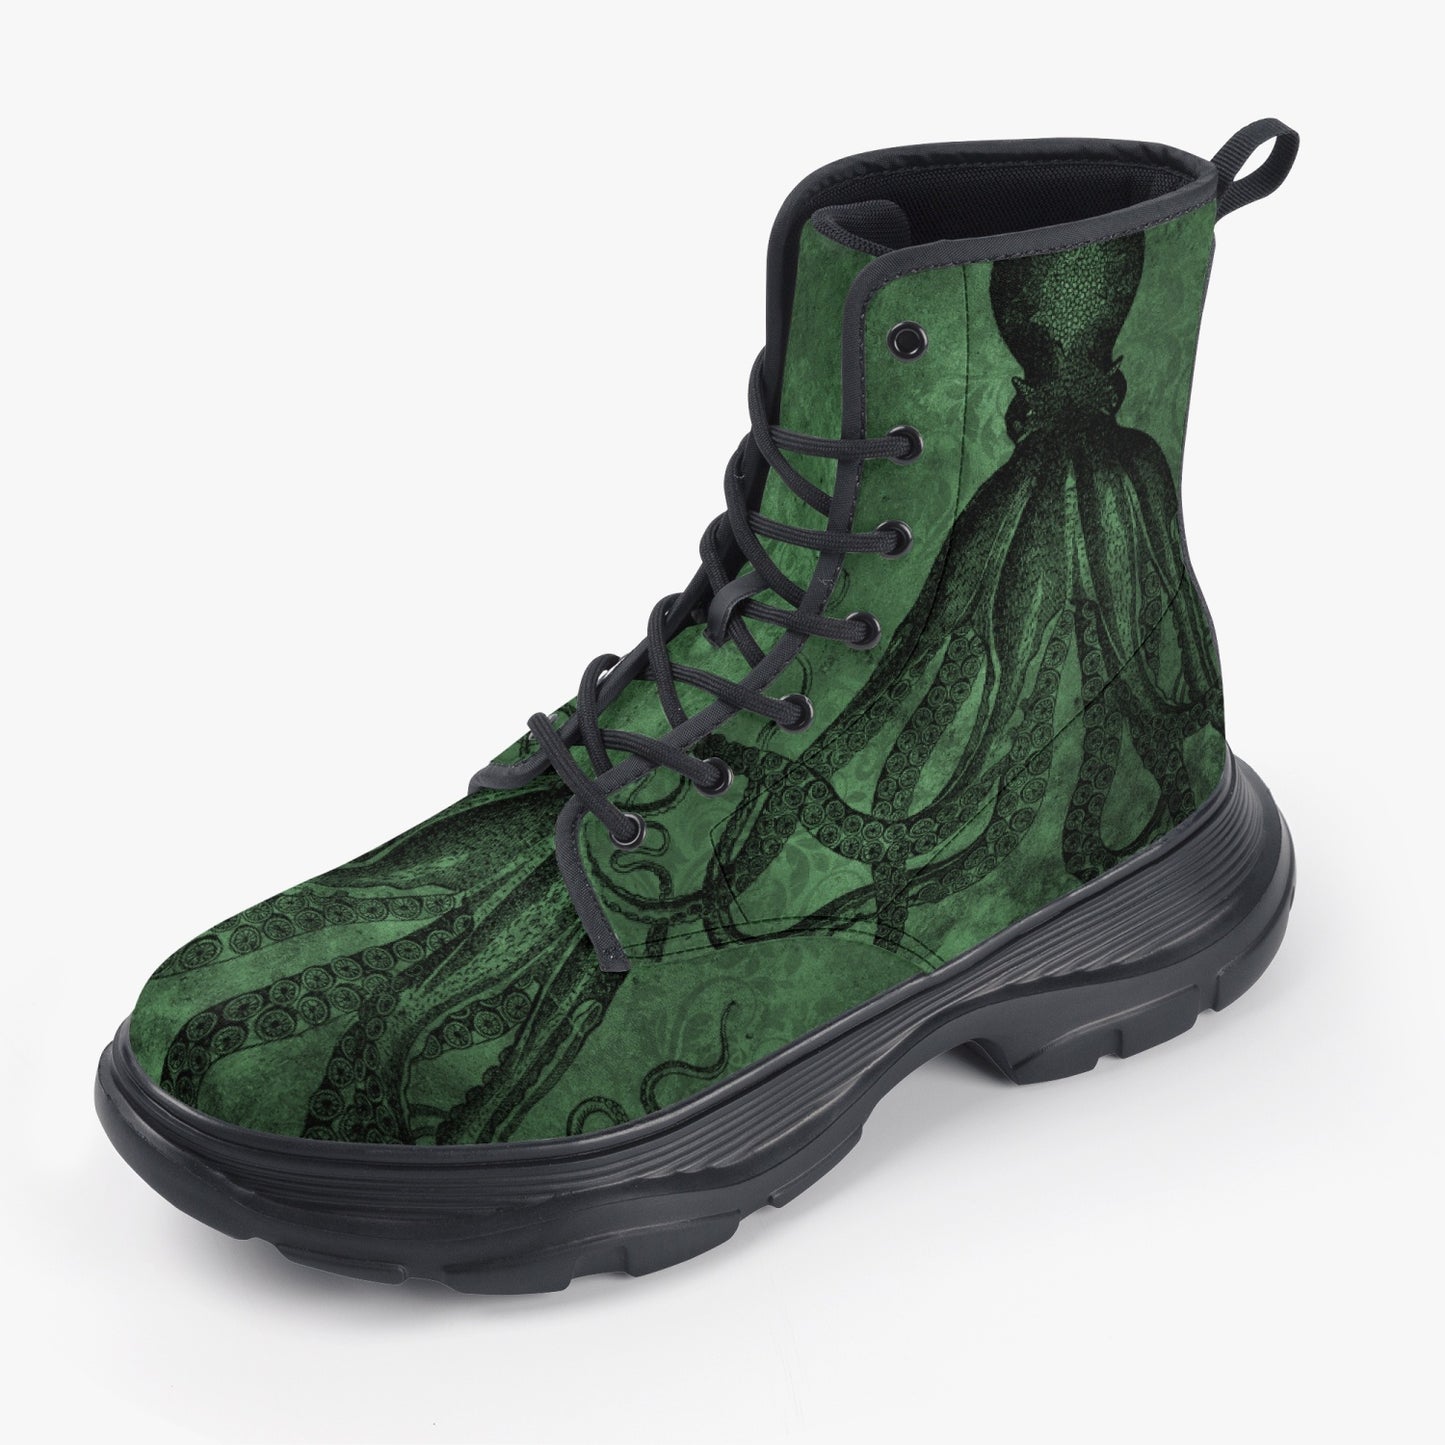 Cthullu Chunky Green Boots (JPREG69)